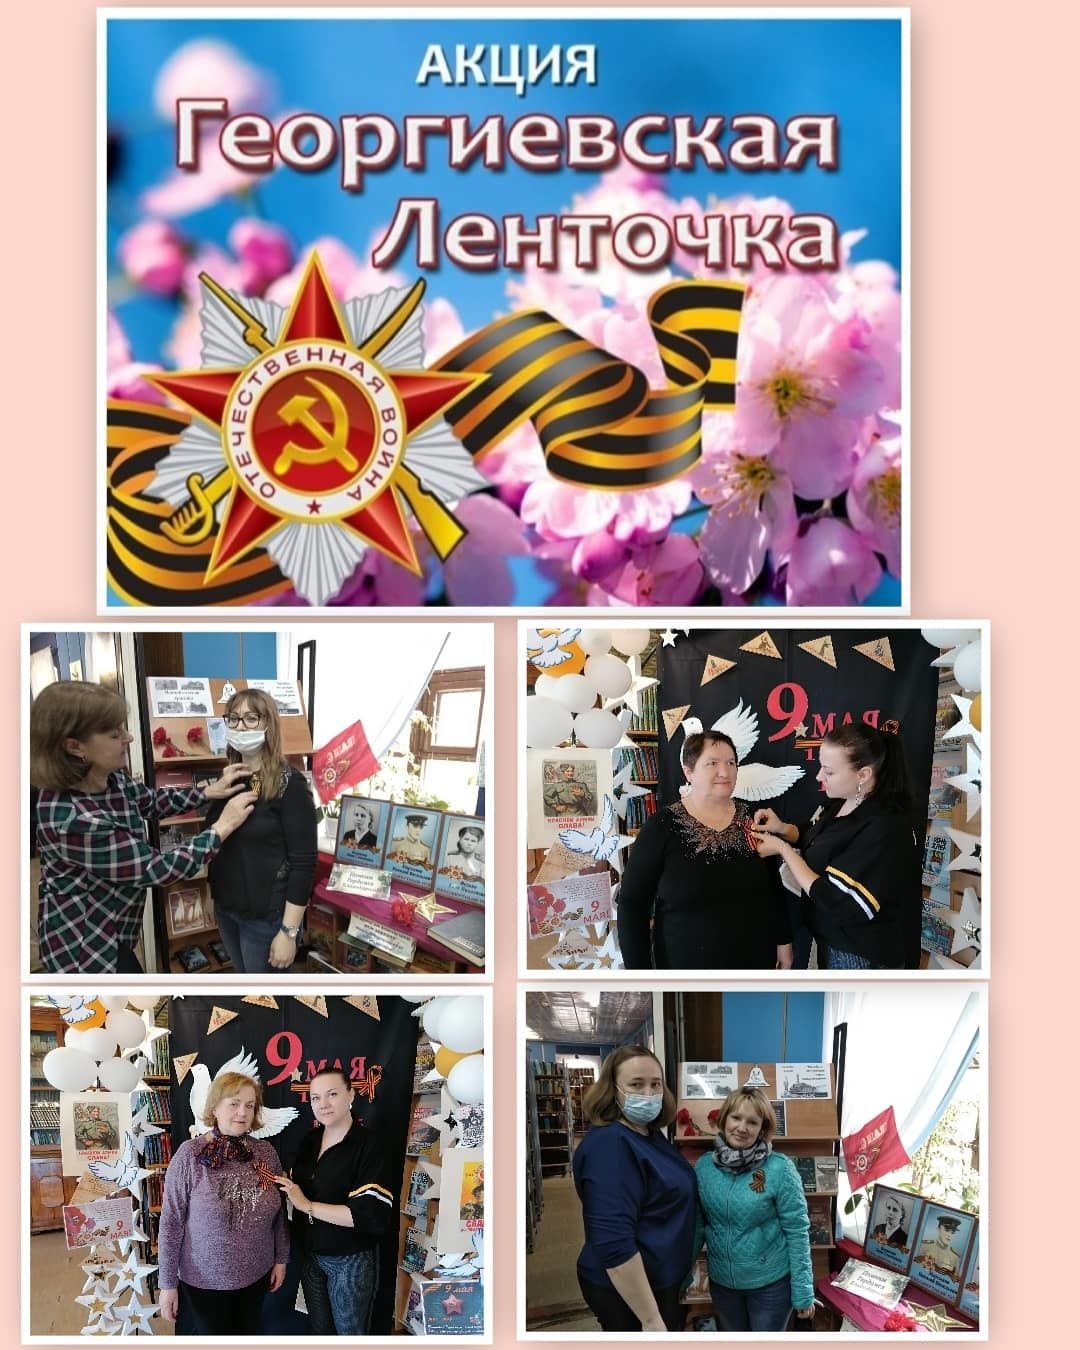 Лаишевская Центральная библиотека присоединилась к Всероссийской акции "Георгиевская ленточка"